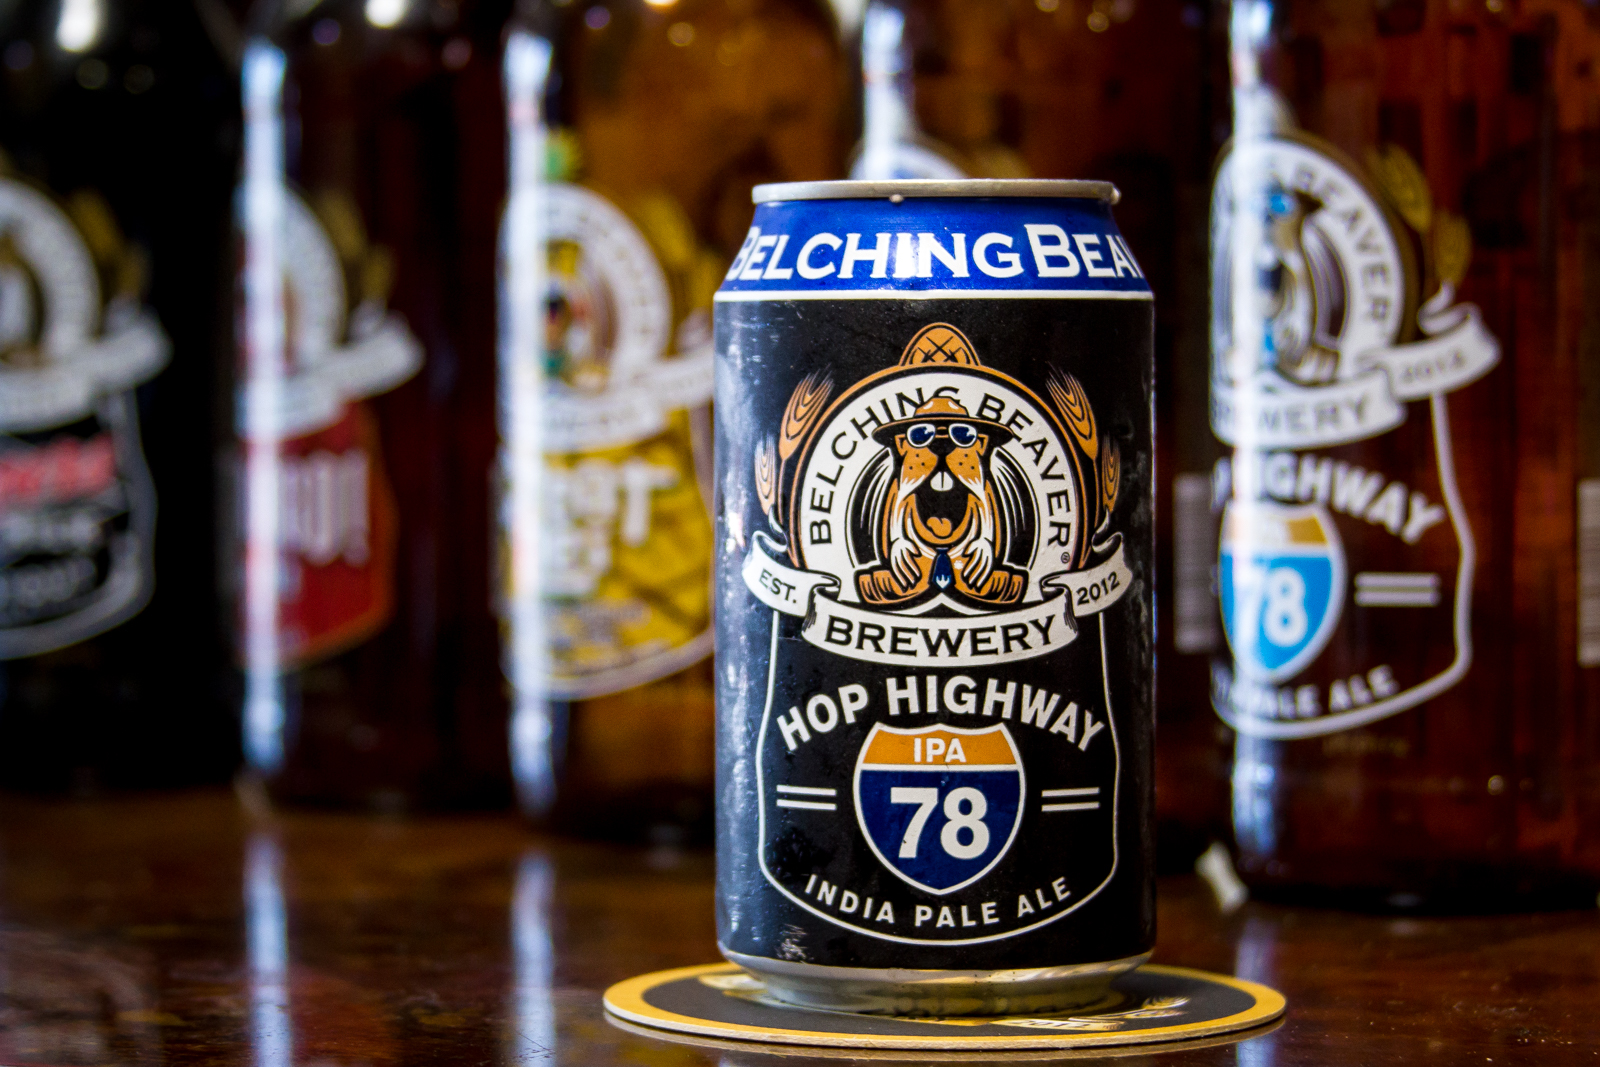 Belching Beaver Brewery - Hop Highway IPA